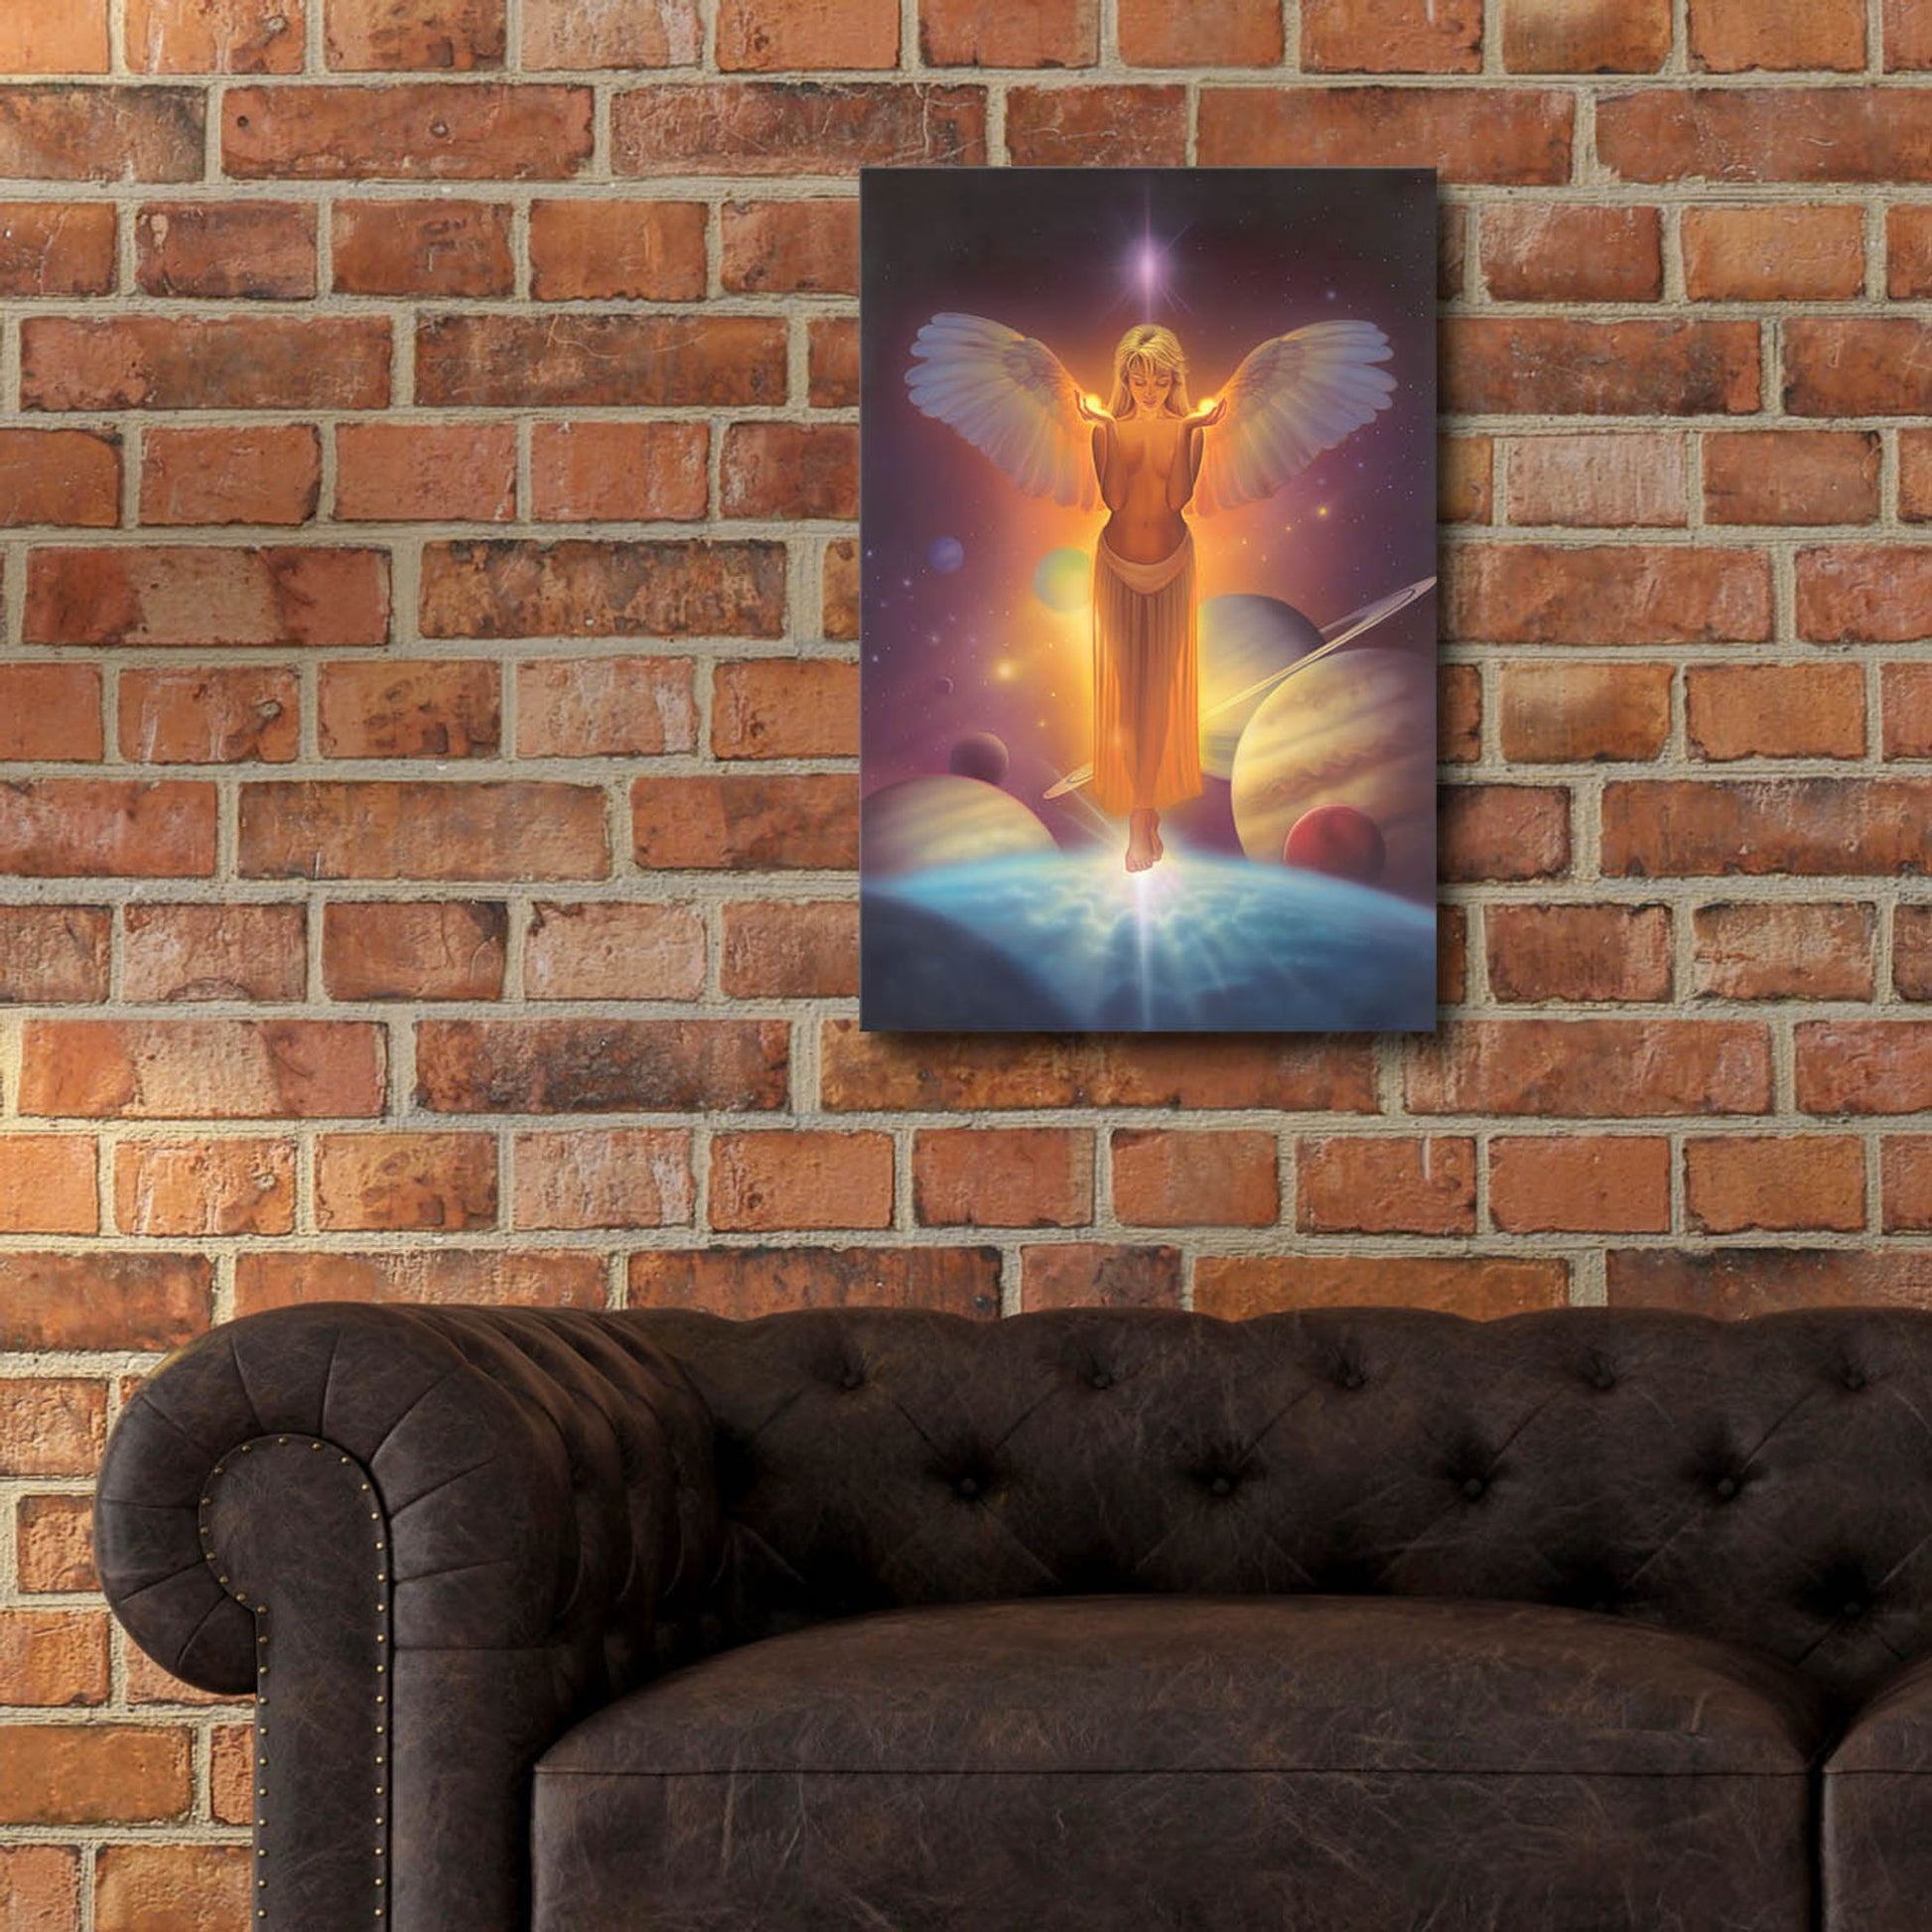 Epic Art 'The Light Bearer-Angel Of Light' by Kirk Reinert, Acrylic Glass Wall Art,16x24